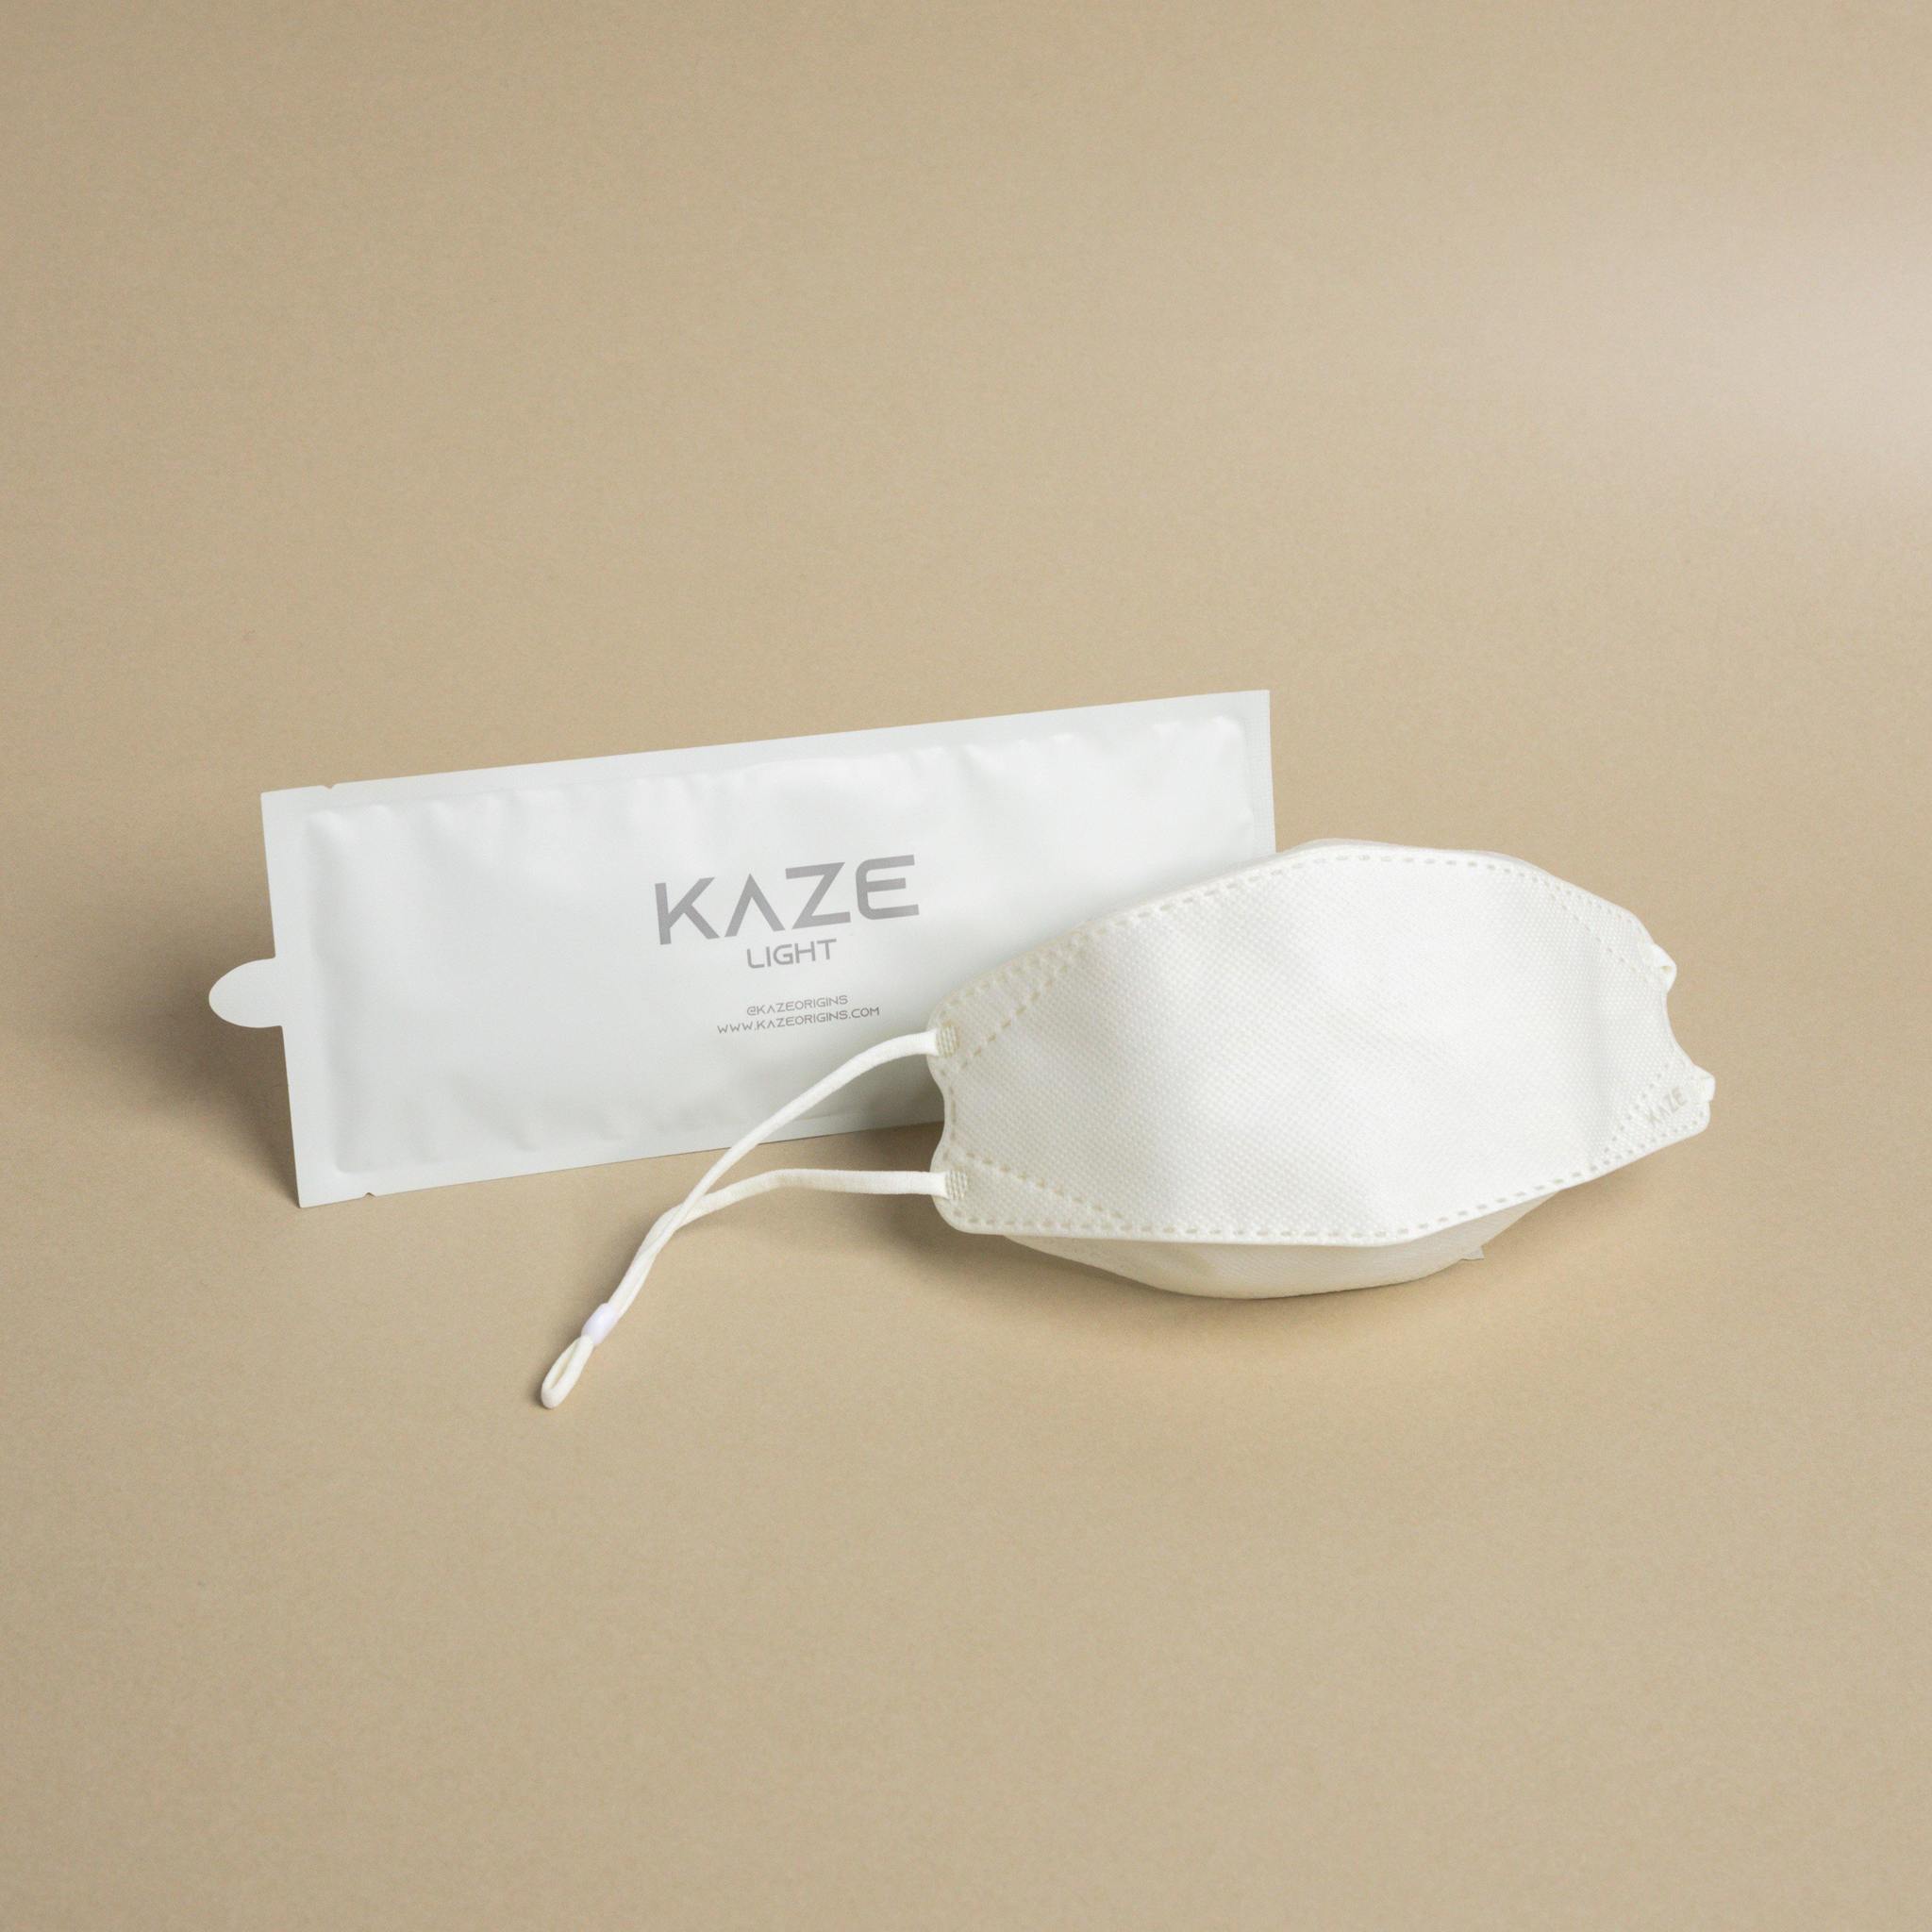 KAZE Masks - Light Element Series